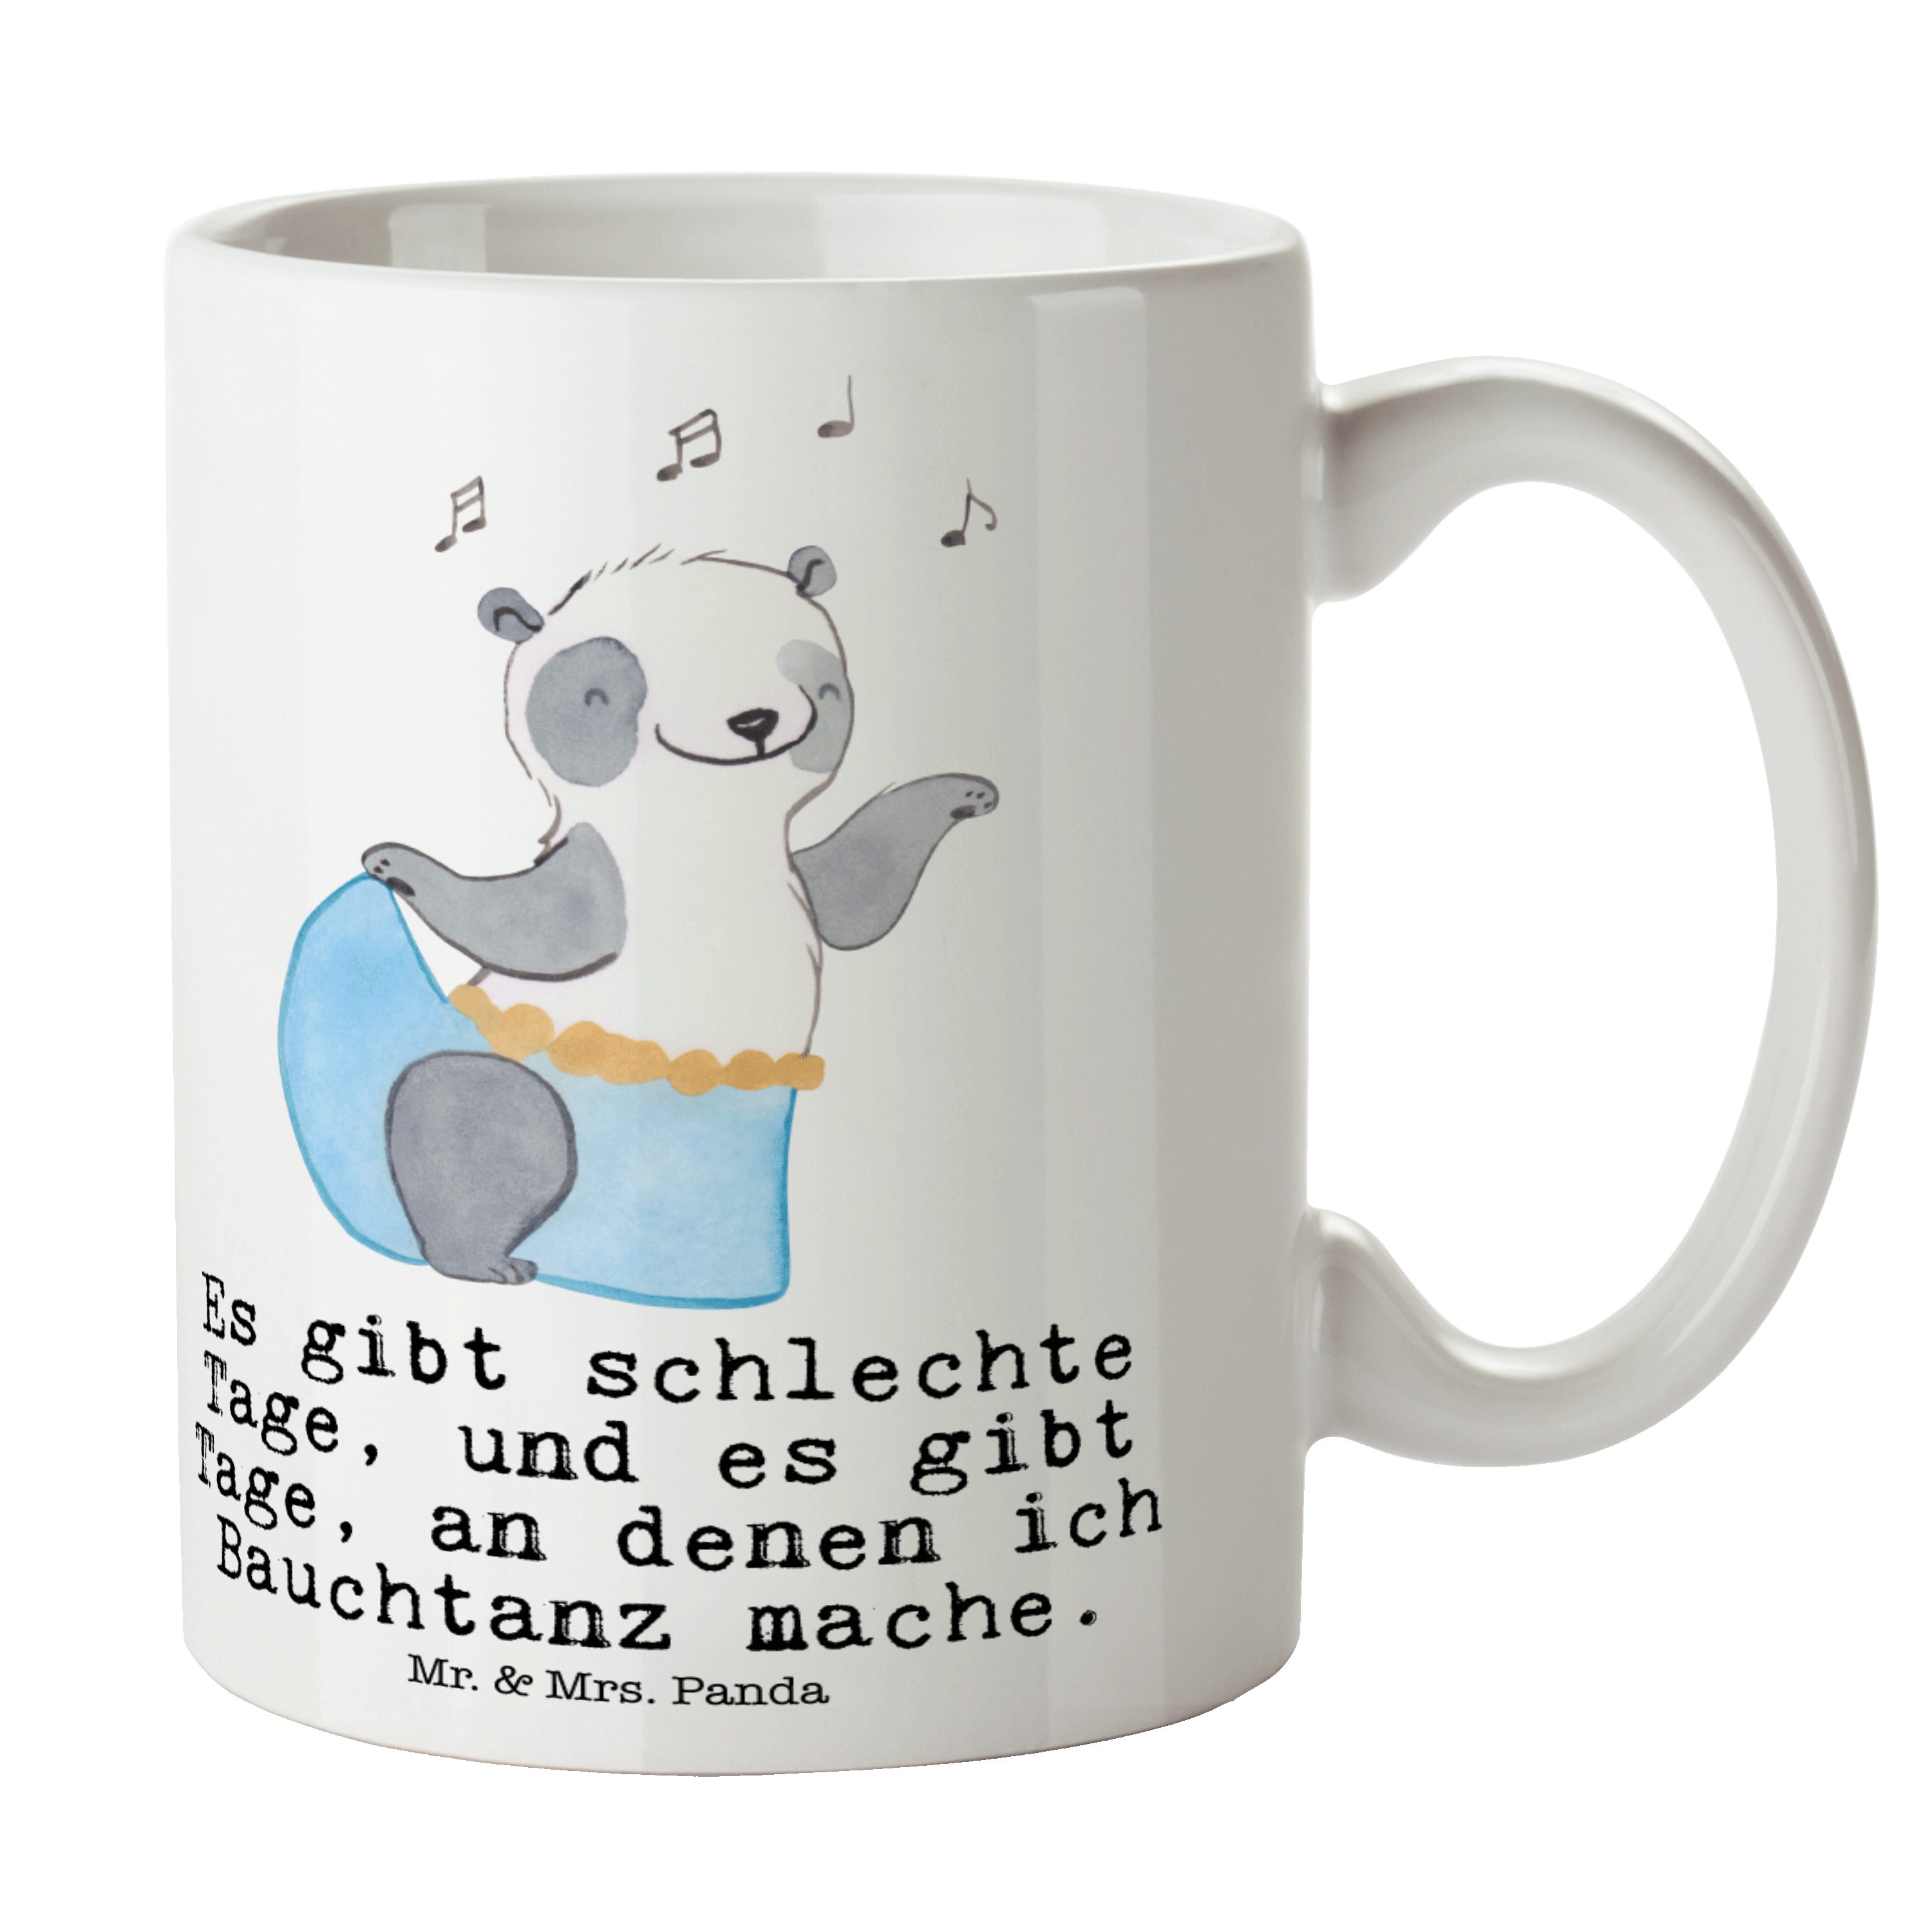 Mr. & Mrs. Panda Tasse Panda Bauchtanz Tage - Weiß - Geschenk, Becher, Tasse, Teebecher, ori, Keramik | Tassen